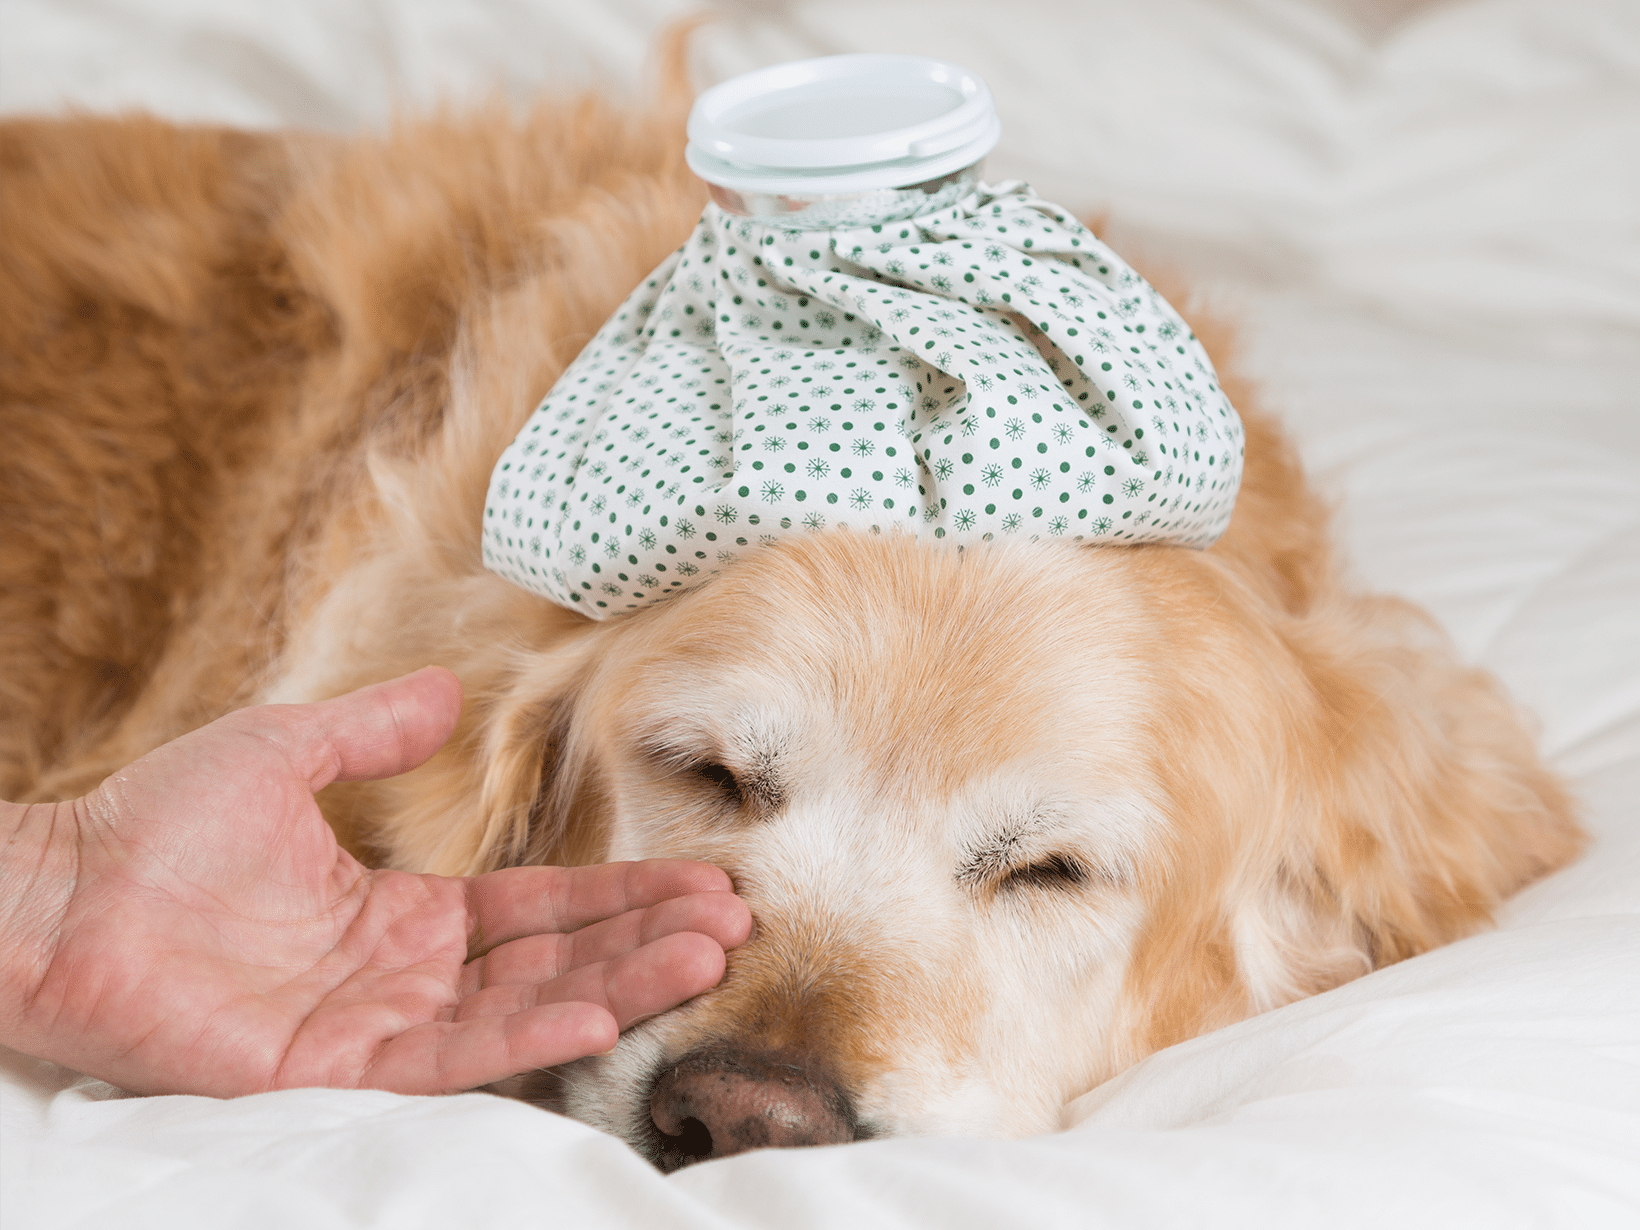 Symptomen van koorts bij een hond